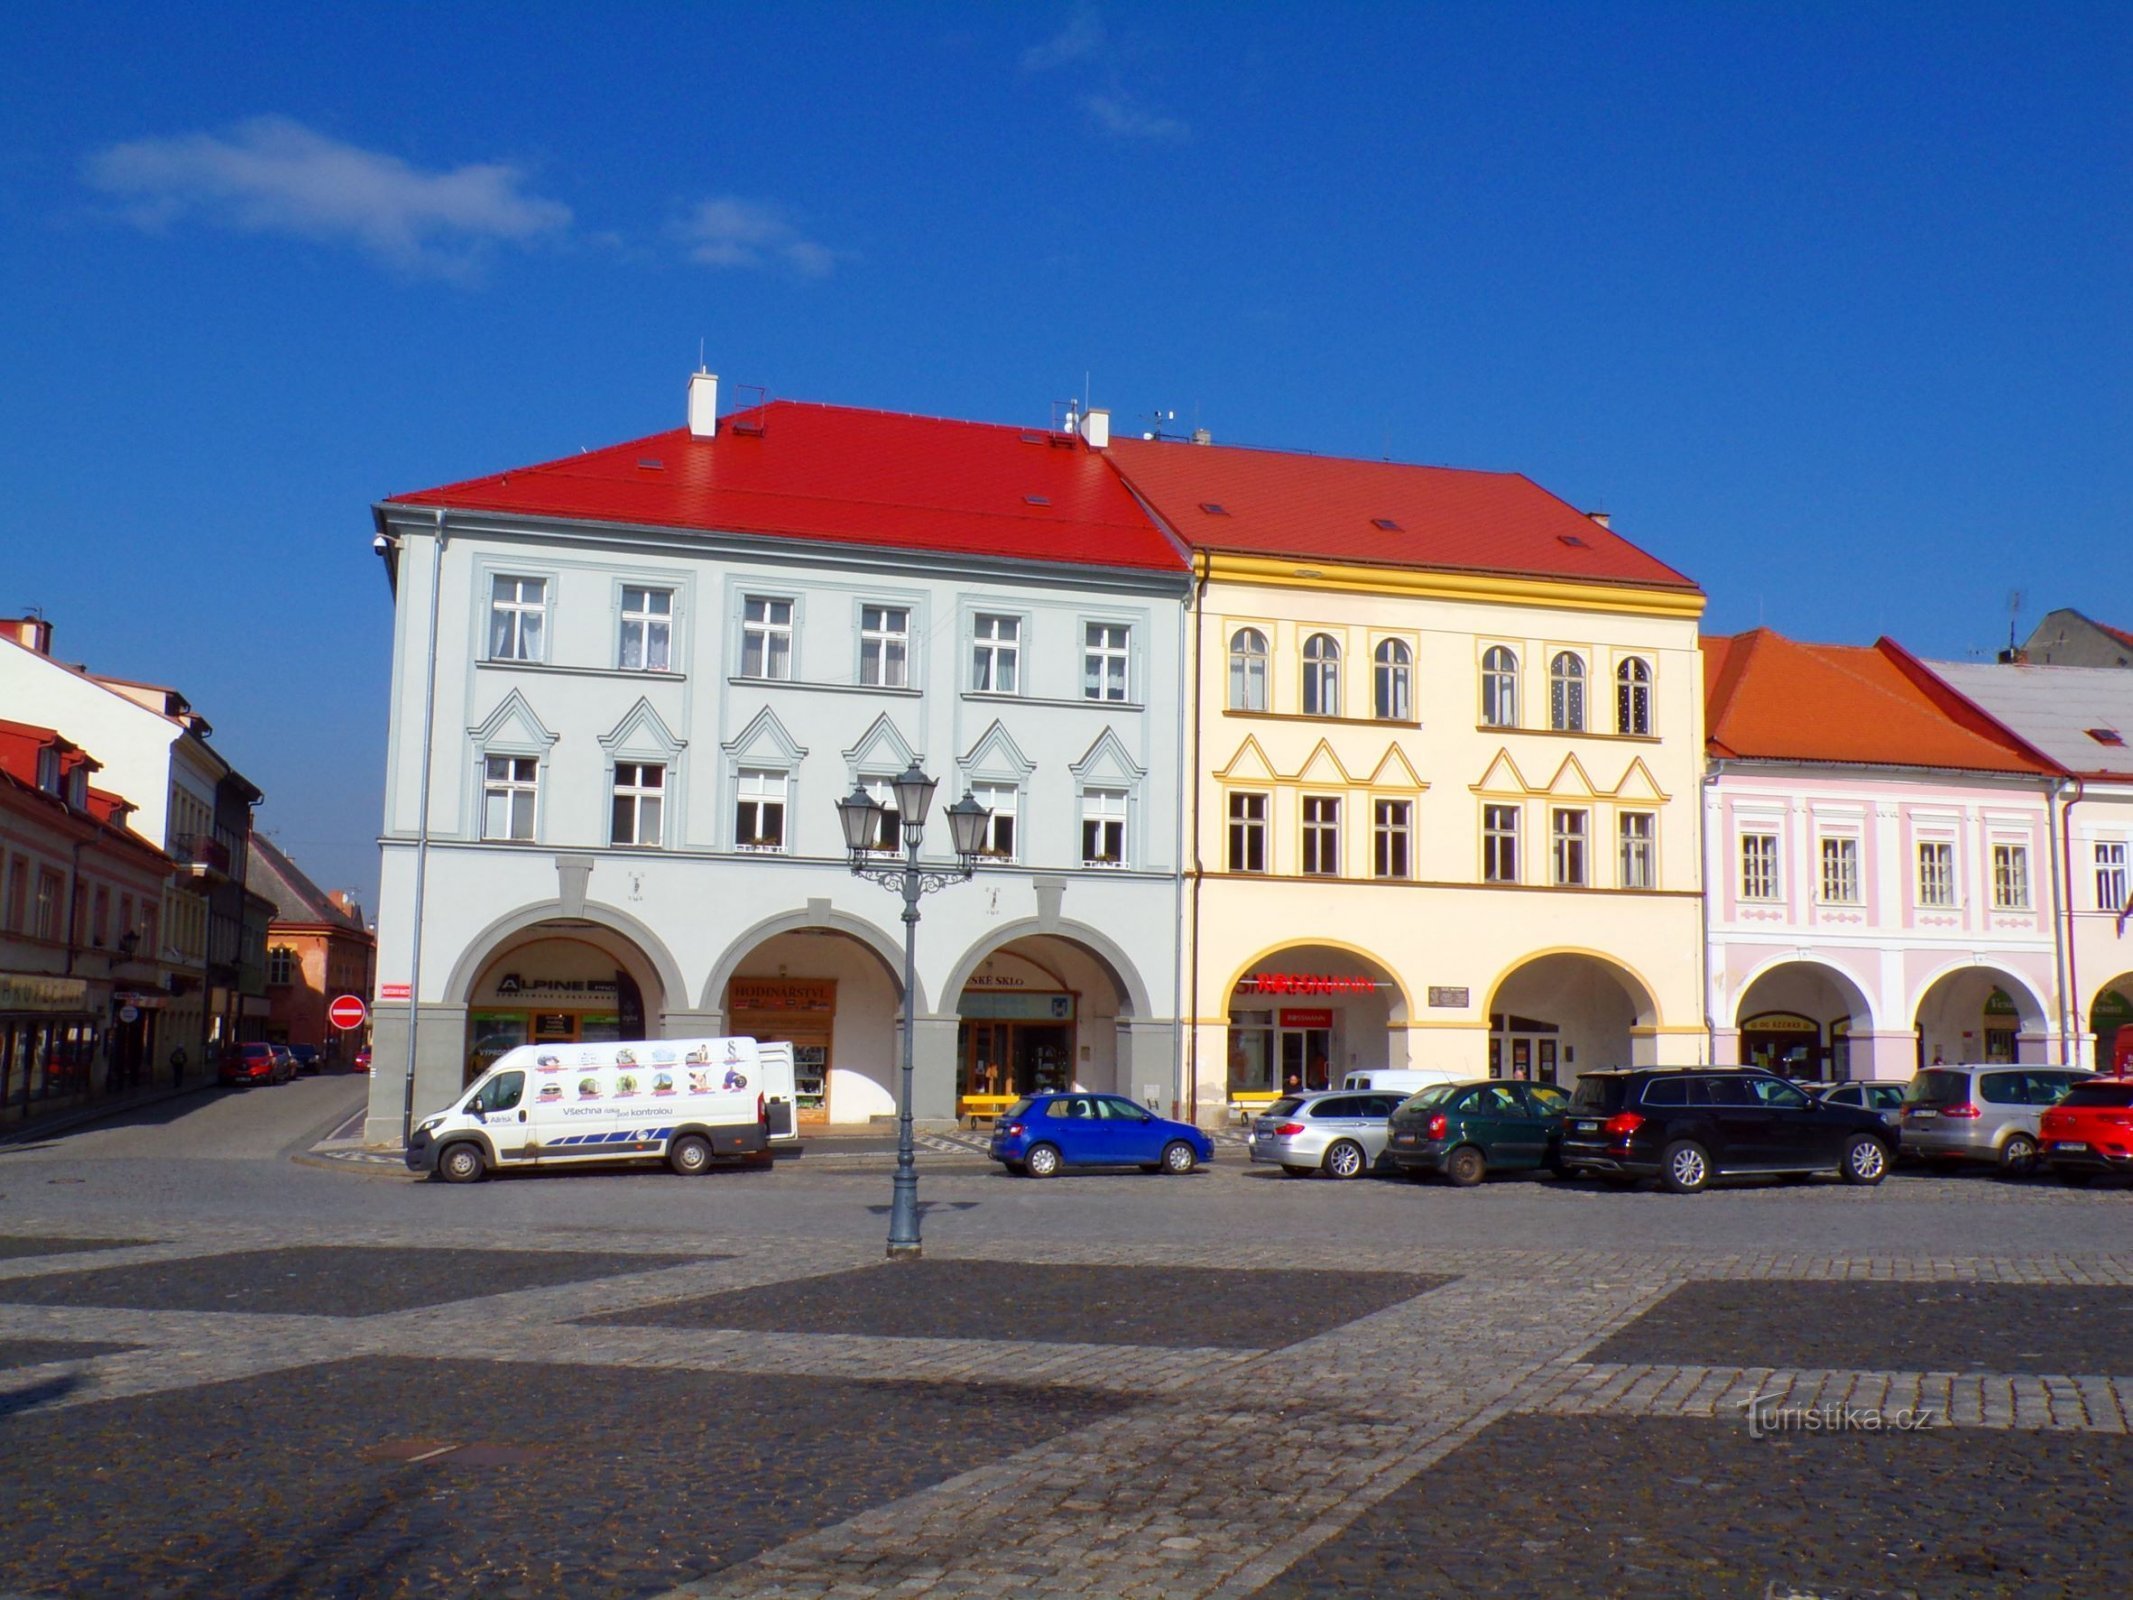 Palackého nr 73 och Valdštejnovo náměstí nr 74 (Jičín, 3.3.2022-XNUMX-XNUMX)